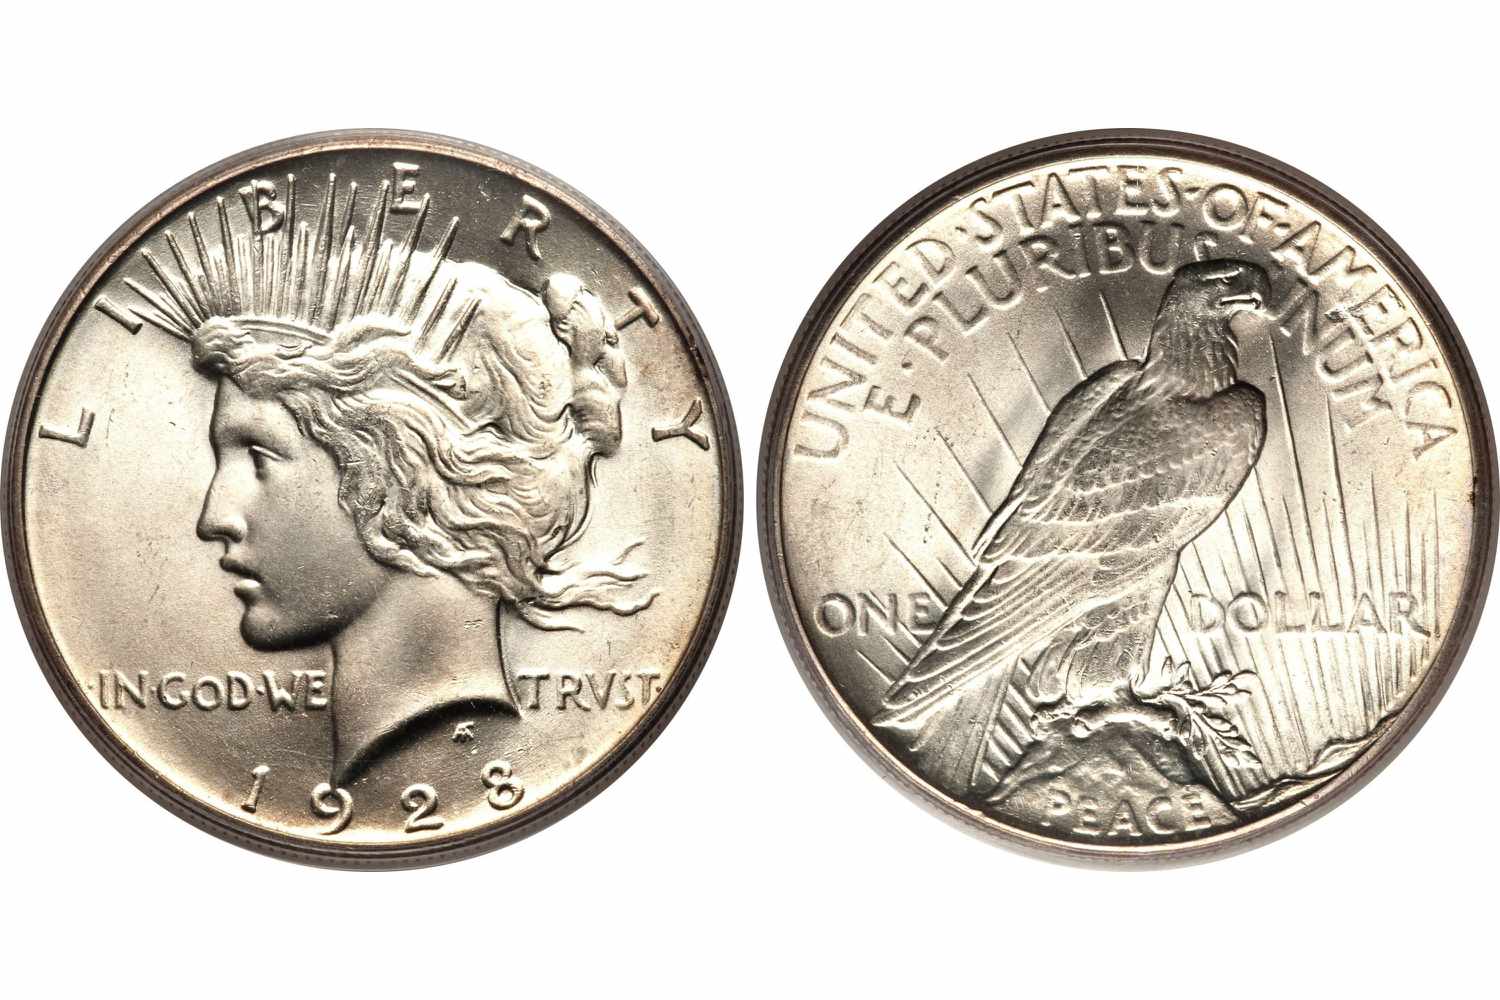 1928年和平美元